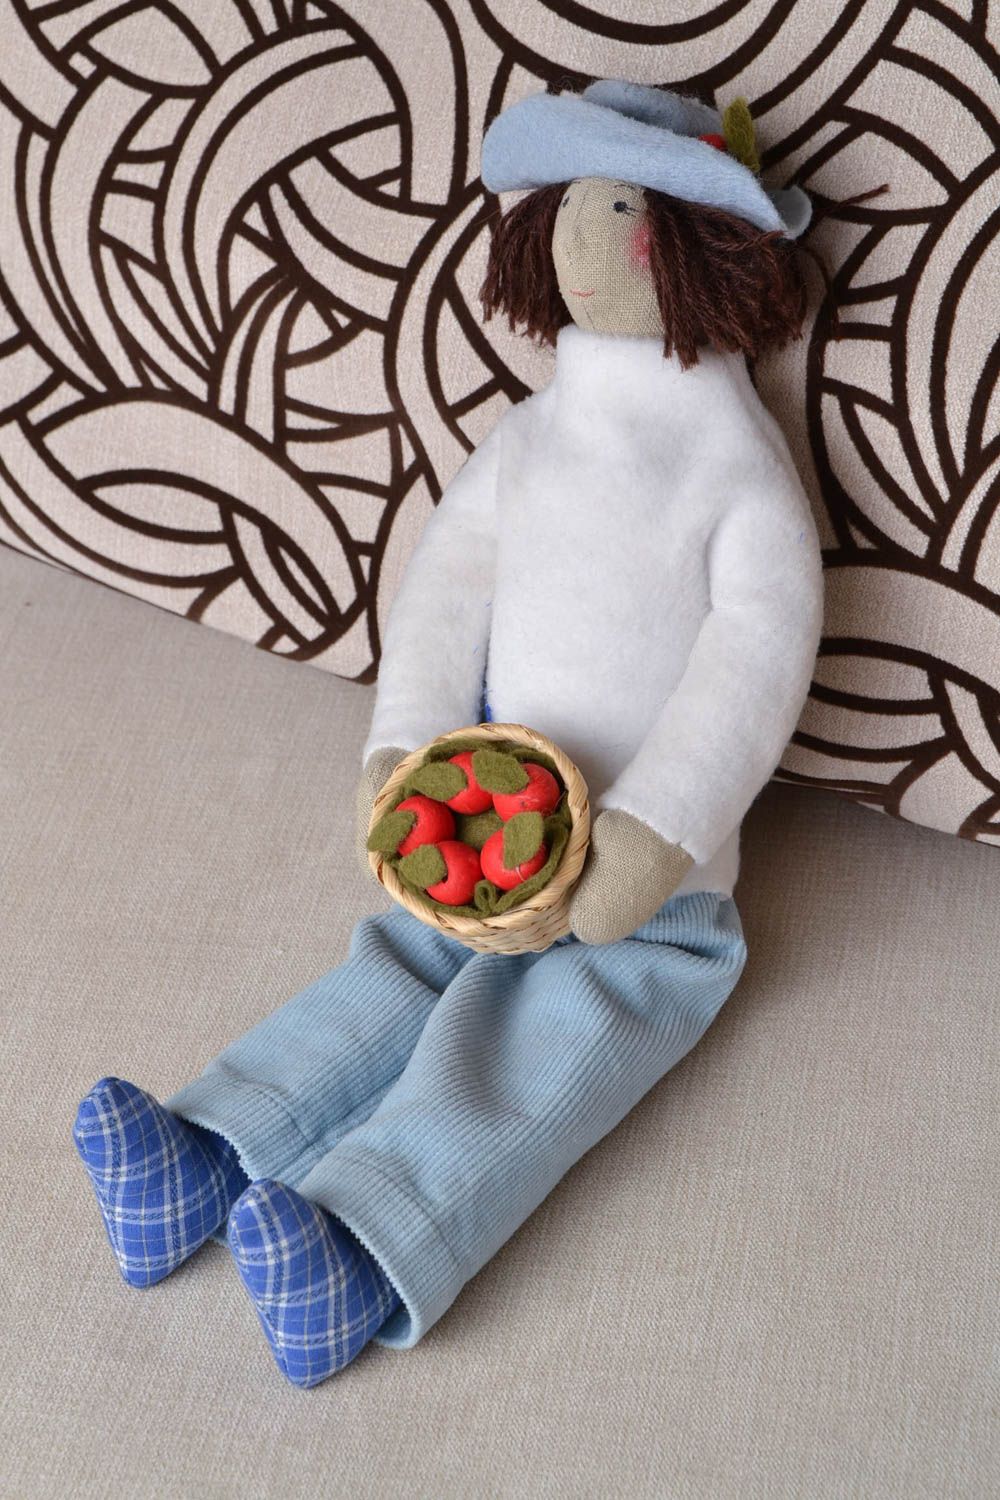 Авторская кукла из натуральных тканей игрушка ручной работы Садовник с клубникой фото 1